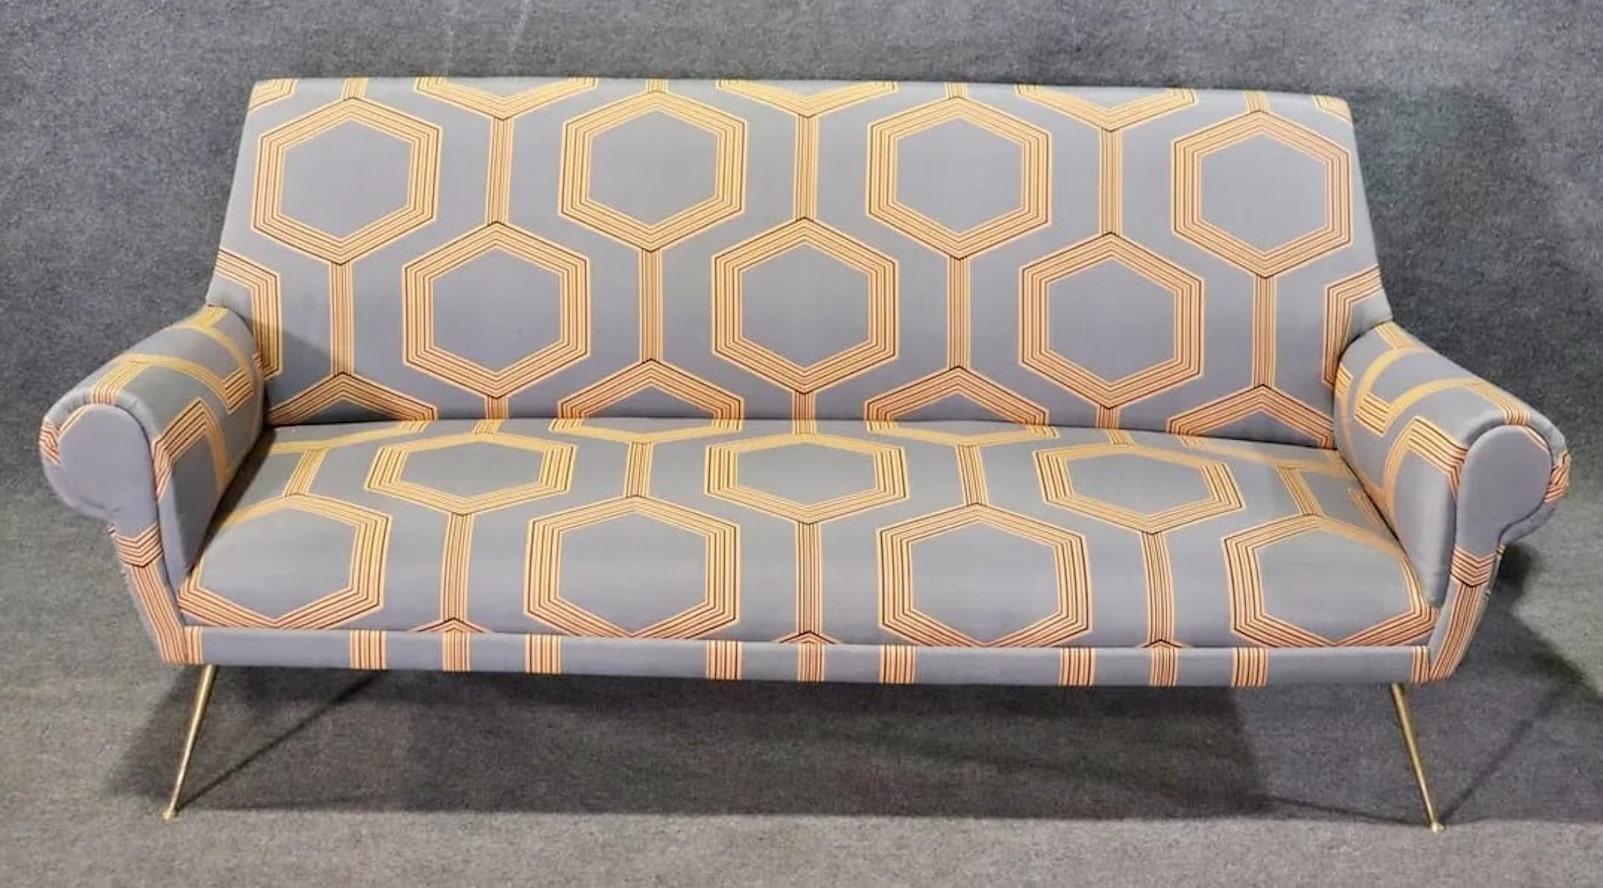 Sofa im modernen Stil der Jahrhundertmitte mit abgerundeten Armlehnen und polierten Messingbeinen. 
Bitte bestätigen Sie den Standort NY oder NJ